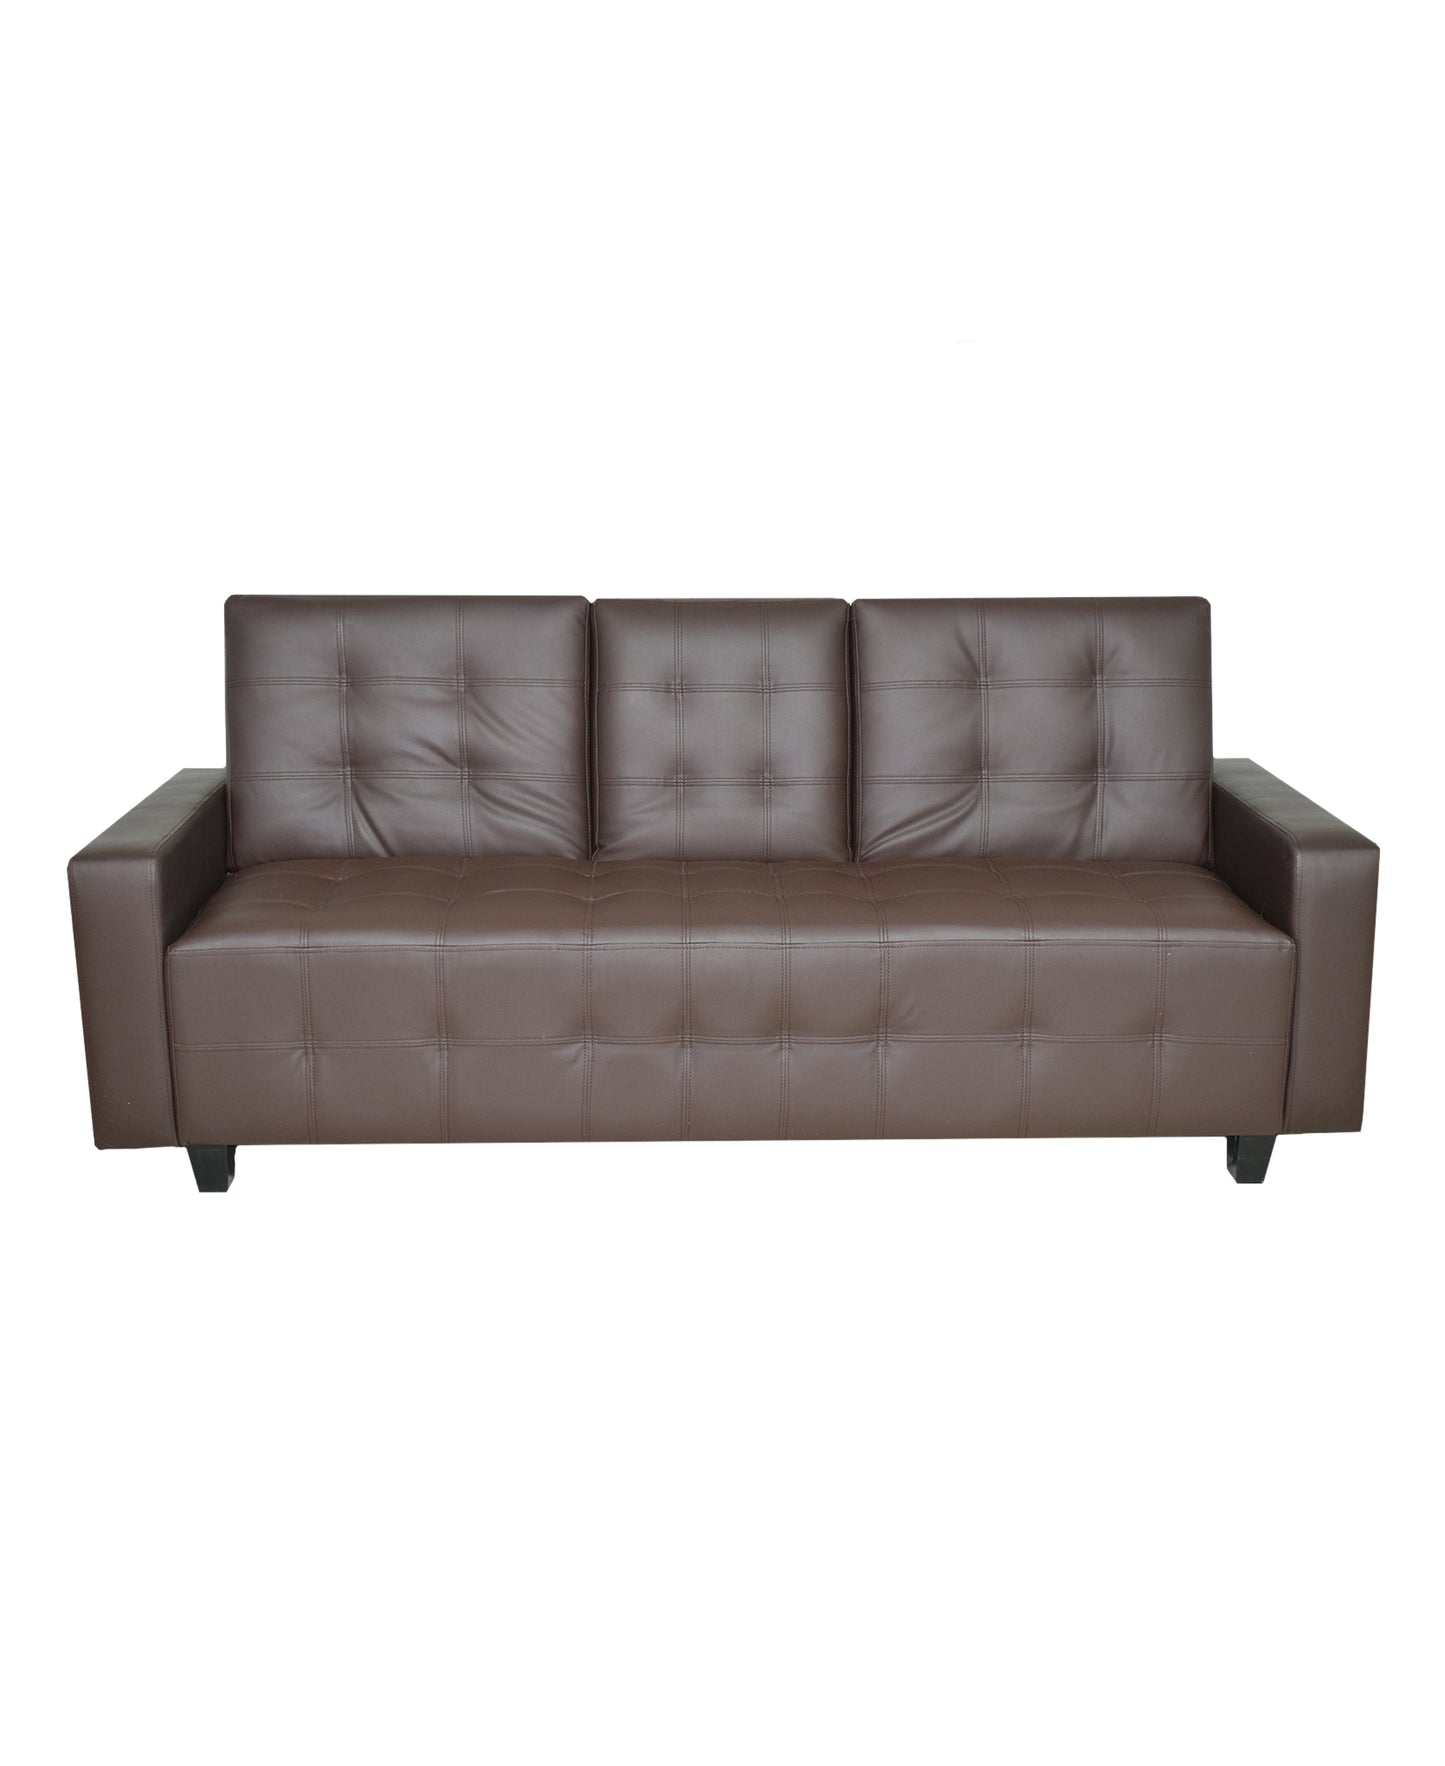 Urban Décor Hamilton Sleeper Couch